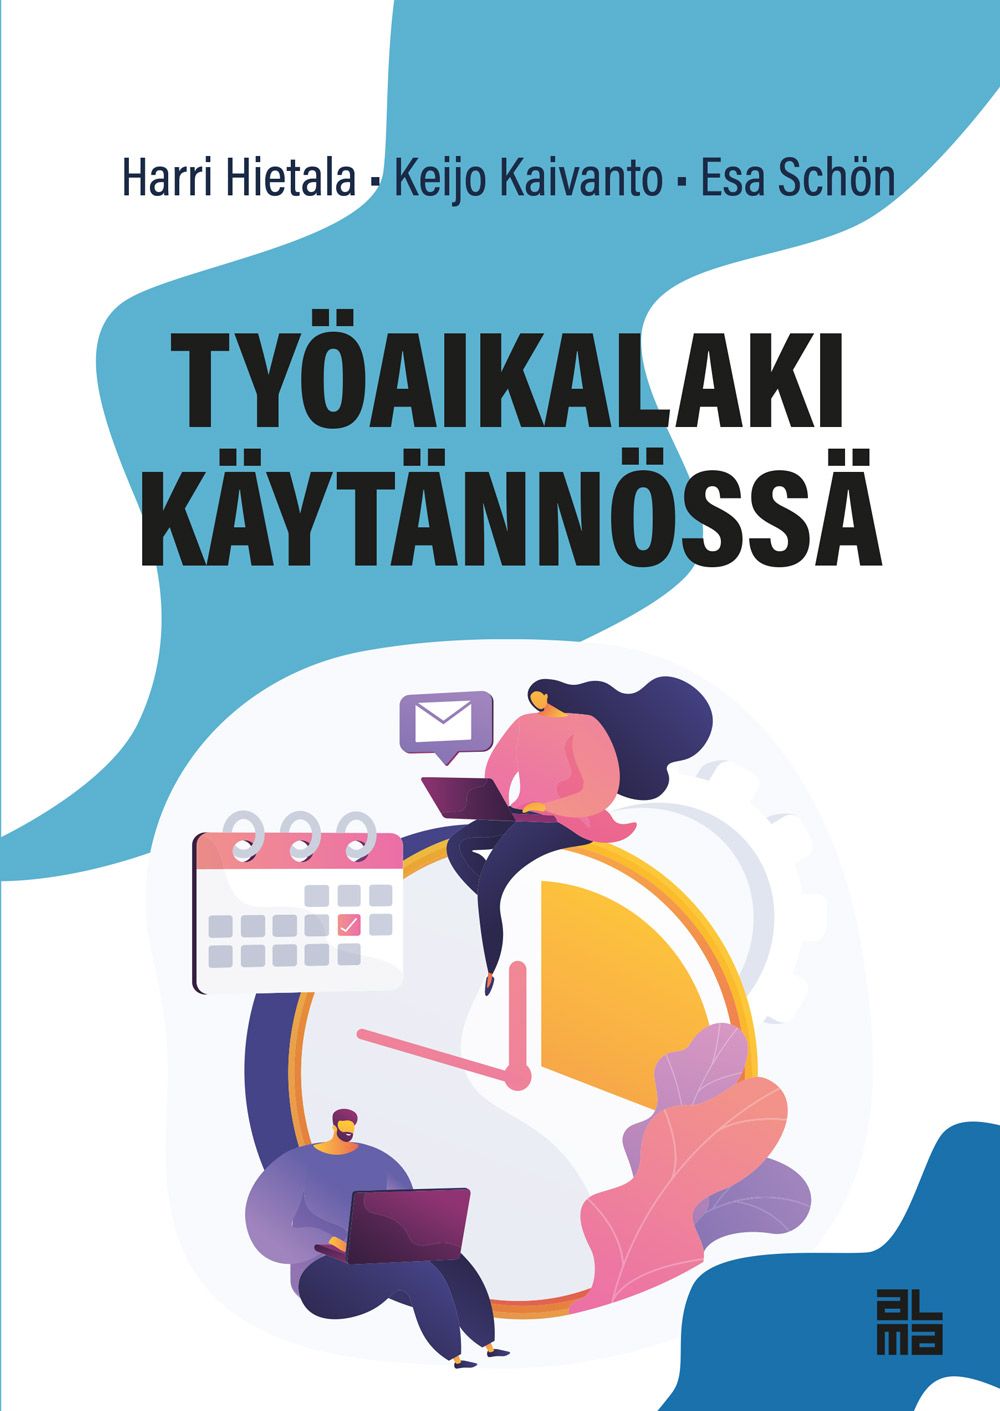 Kirjailijan Keijo Kaivanto & Harri Hietala käytetty kirja Työaikalaki käytännössä